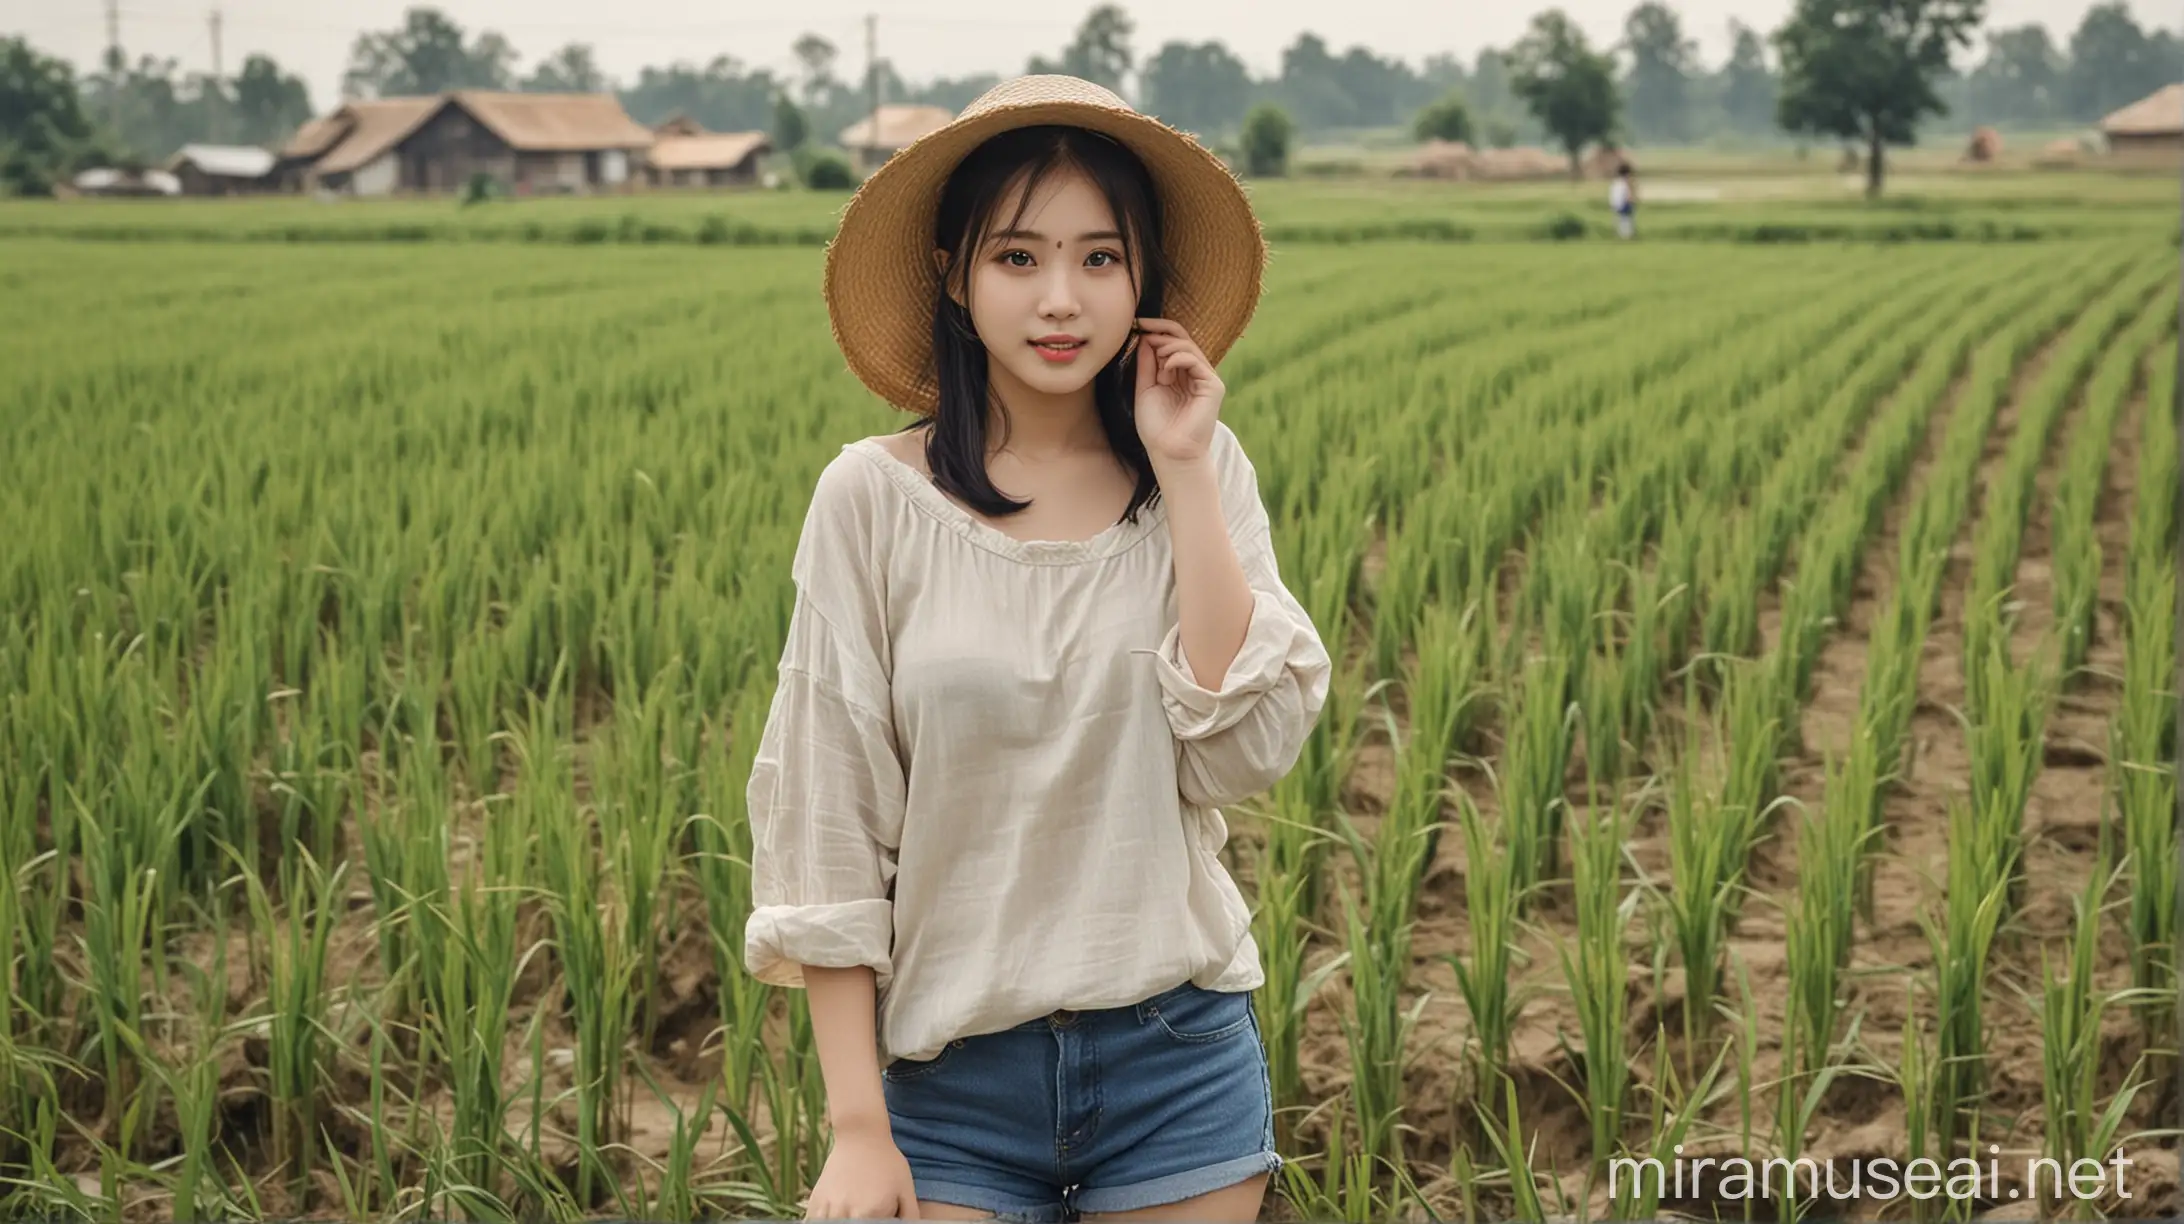 中国女孩，胖胖的，在农村稻田里，衣服朴素